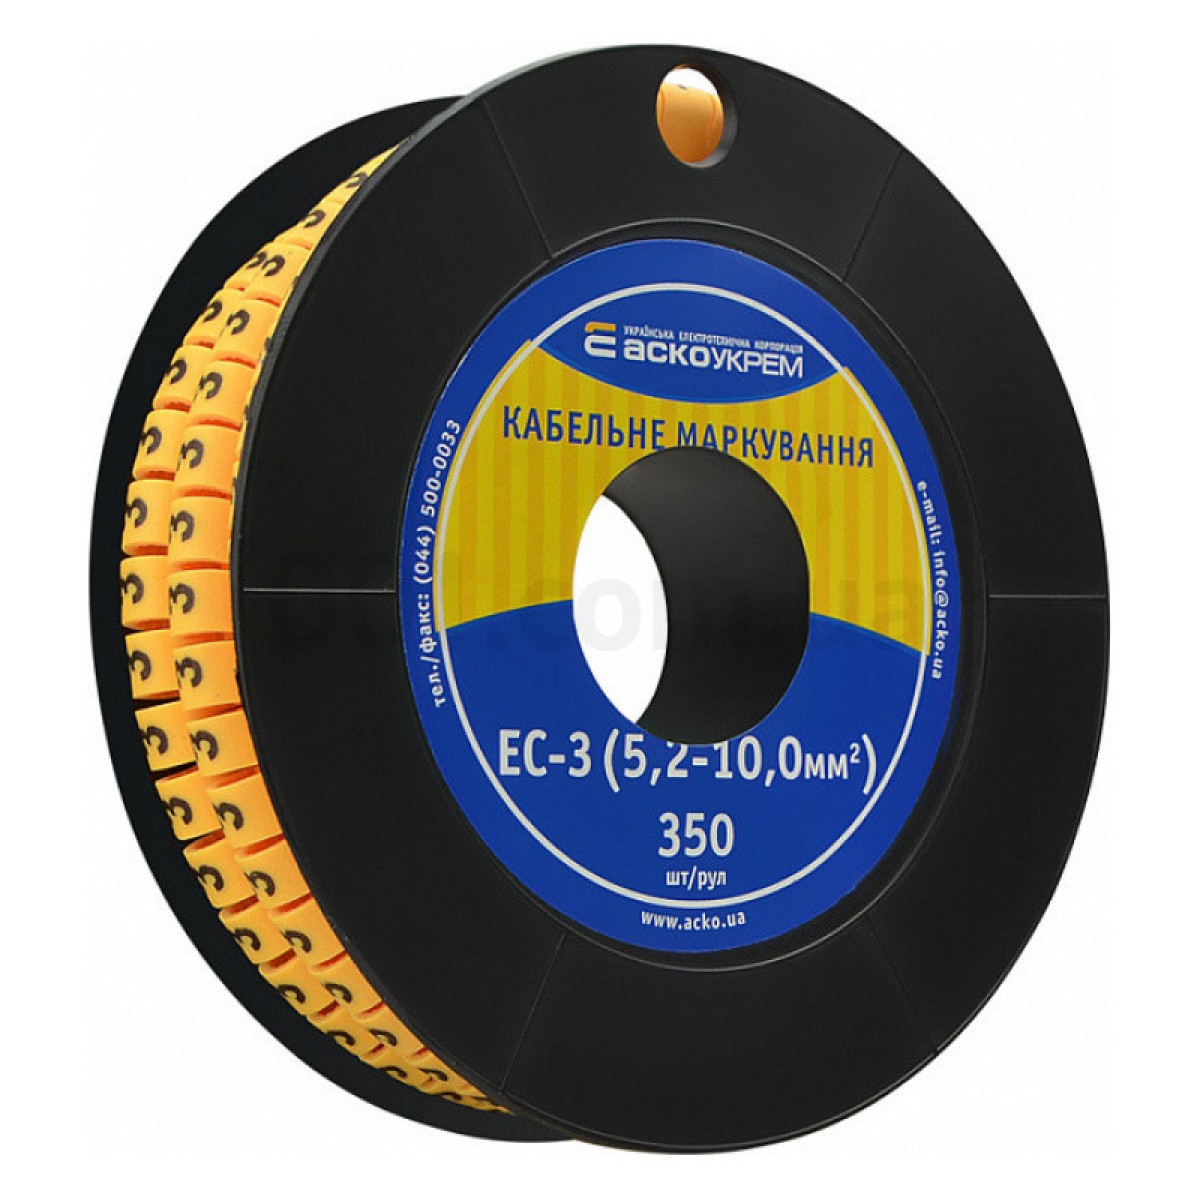 Маркування ЕС-3 для кабелю 5,2-10,0 мм² символ «3» (рулон 250 шт.), АСКО-УКРЕМ 256_256.jpg